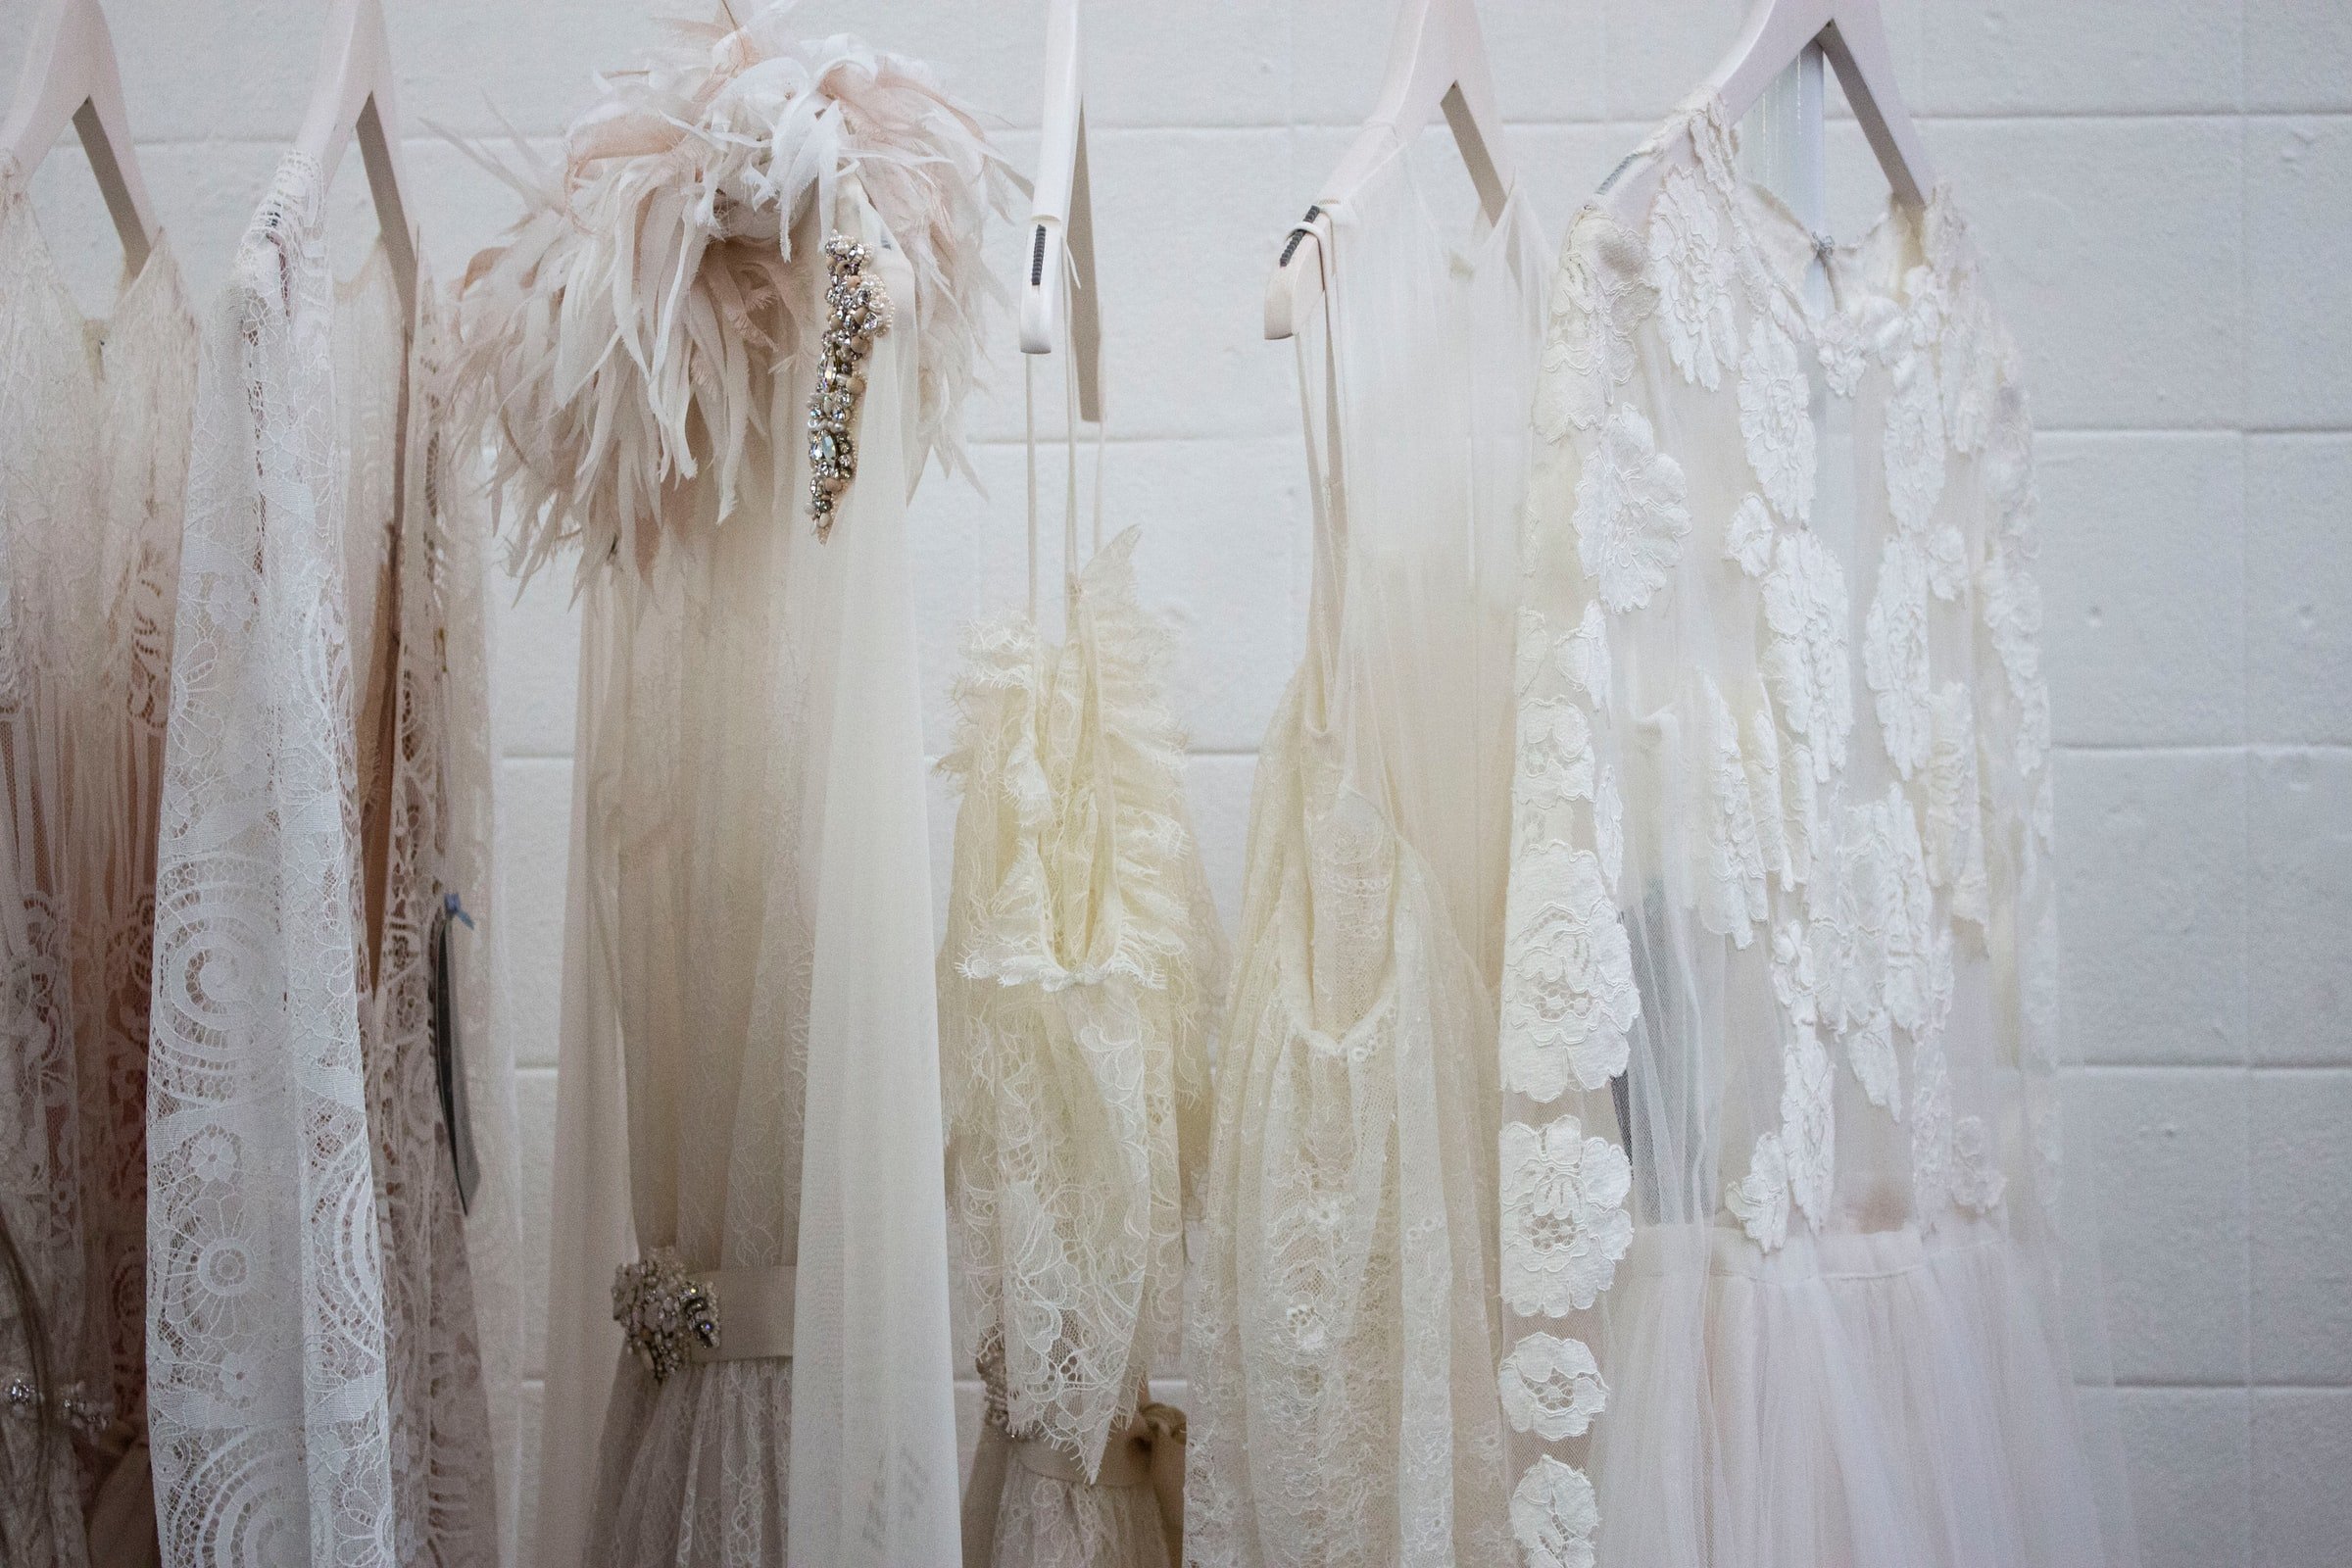 Robes blanches suspendues sur un support | Source : Unsplash